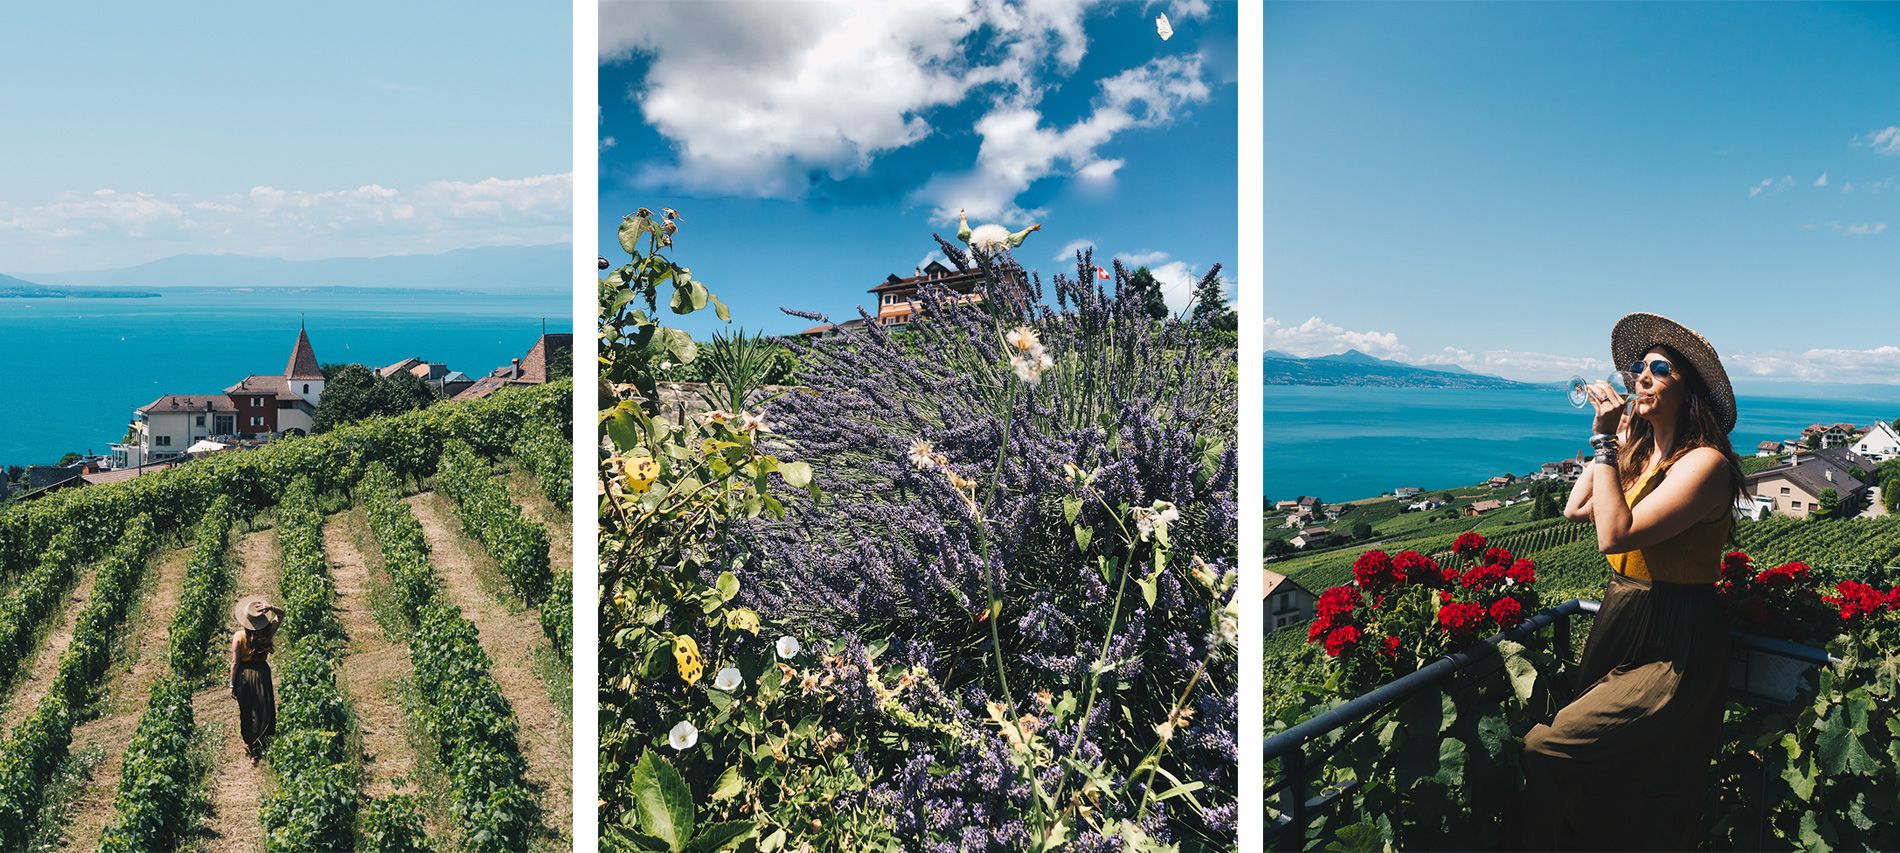 Suisse | Lausanne | Vignoble de lavaux | Mademoiselle-voyage | conseils